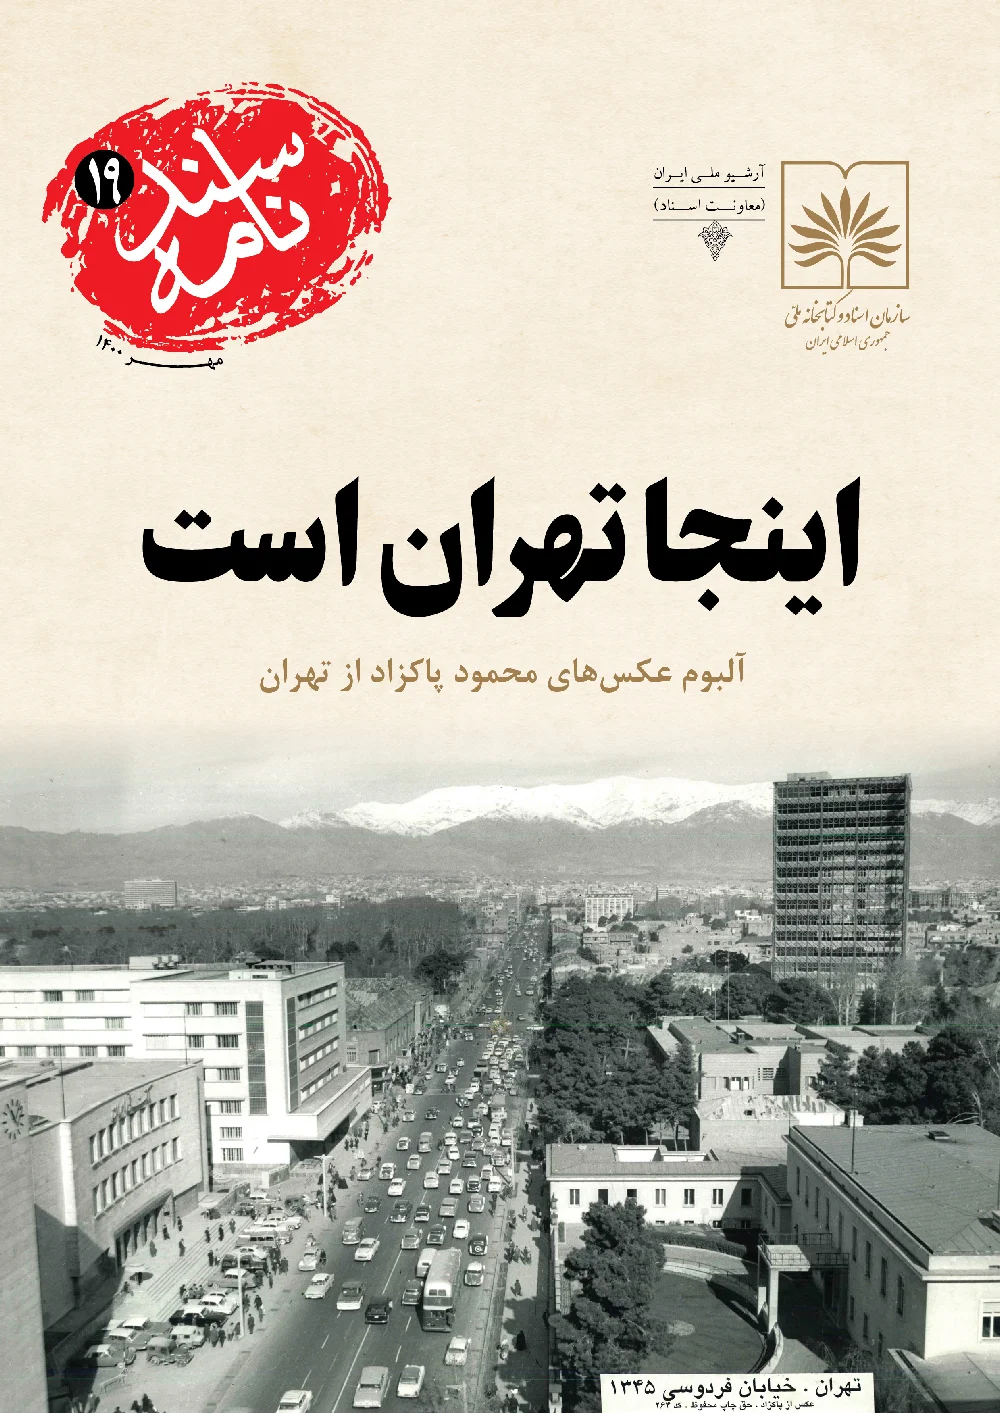 اینجا تهران است: آلبوم عکسهای محمود پاکزاد از تهران